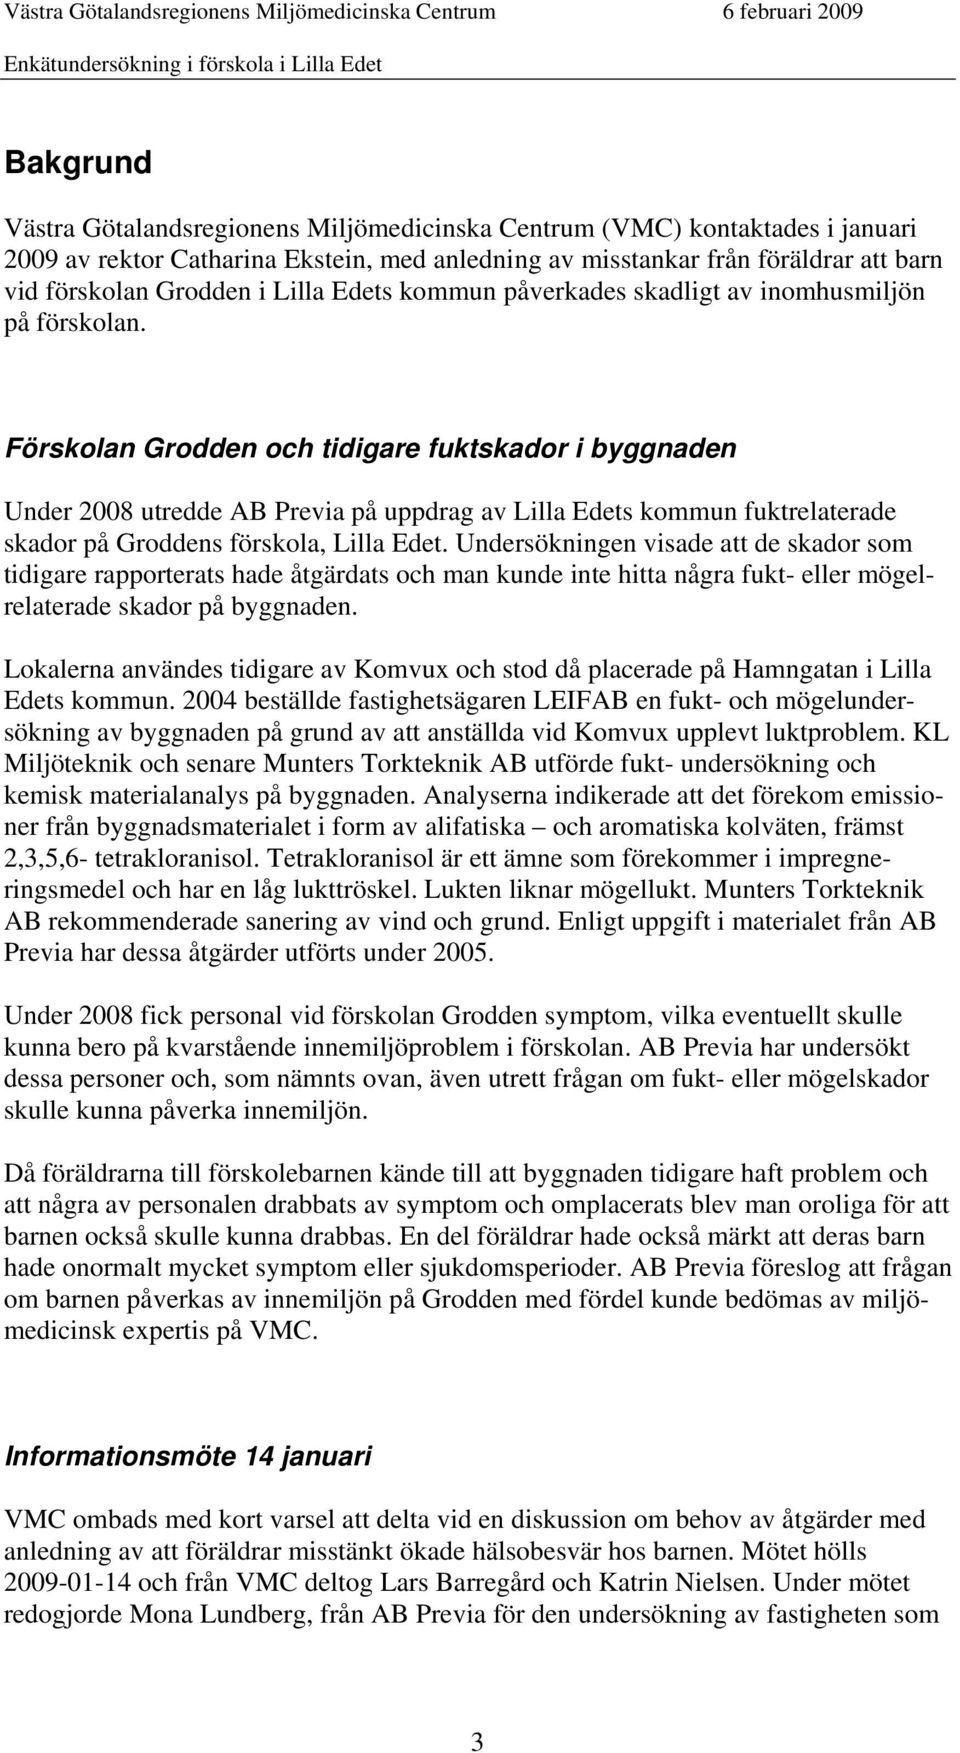 Förskolan Grodden och tidigare fuktskador i byggnaden Under 2008 utredde AB Previa på uppdrag av Lilla Edets kommun fuktrelaterade skador på Groddens förskola, Lilla Edet.